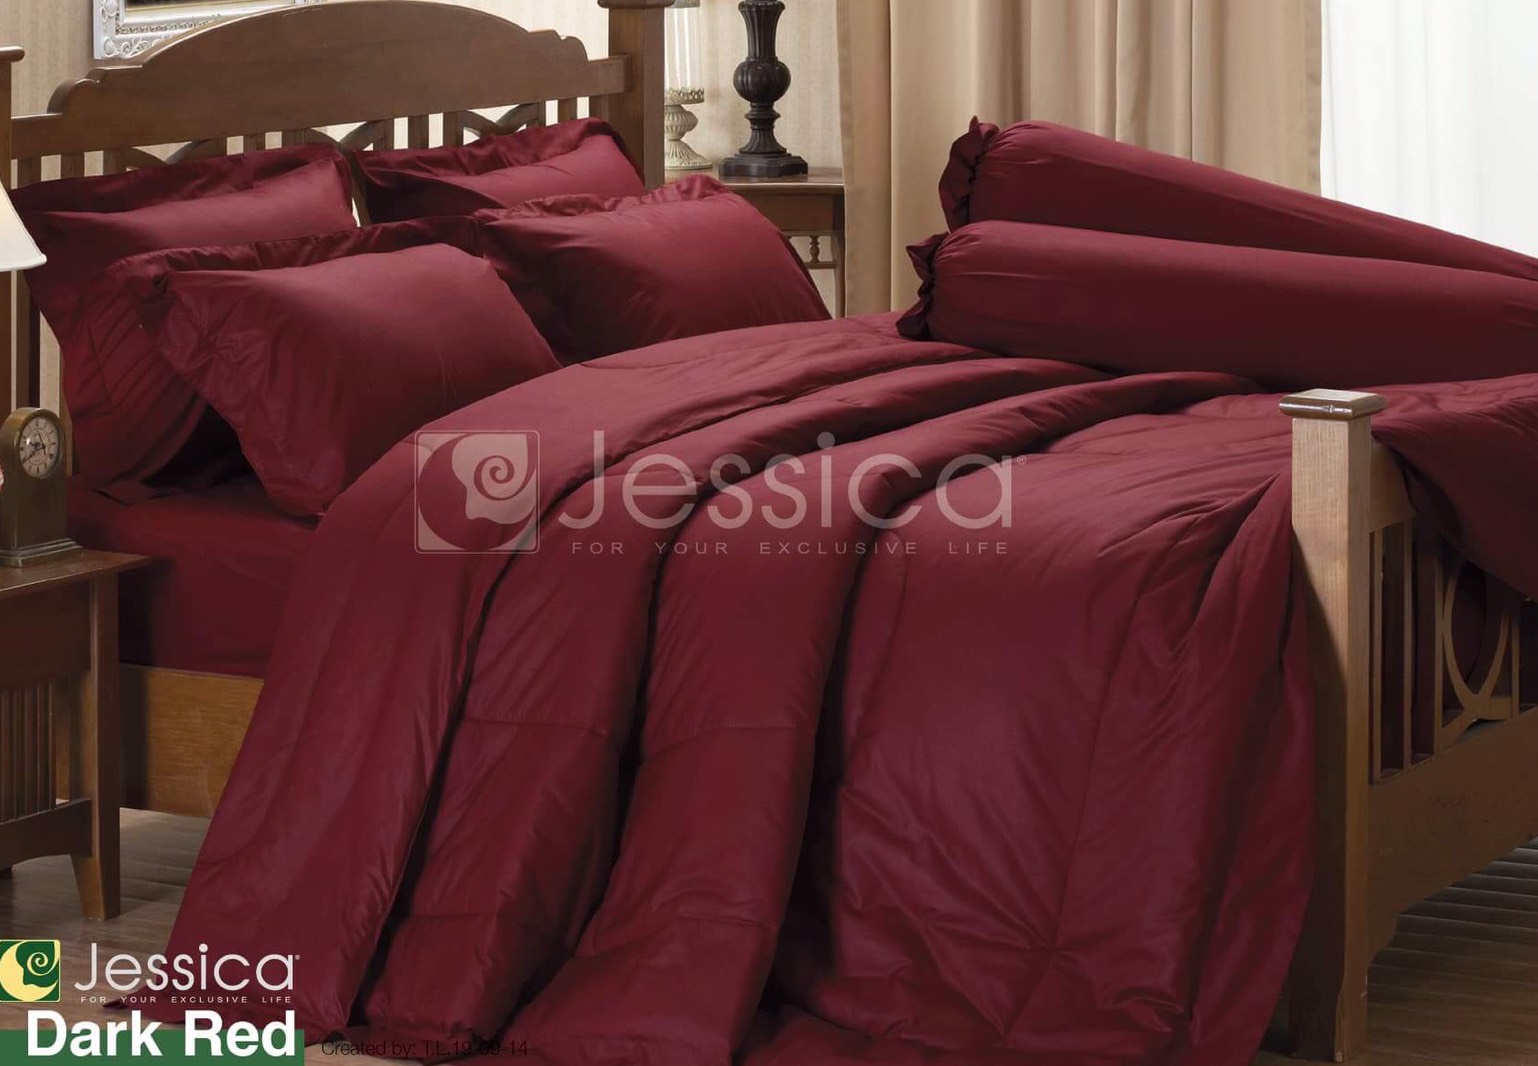 Jessica สีพื้น ชุดผ้าปูที่นอน / ชุด ผ้าปู + นวม สี พื้น แดง เข้ม Dark RED ขนาด 3.5 5 6ฟุต ชุดเครื่องนอน ผ้านวม ผ้าปูที่นอน แท้ 100% wonderful bedding เจสสิก้า